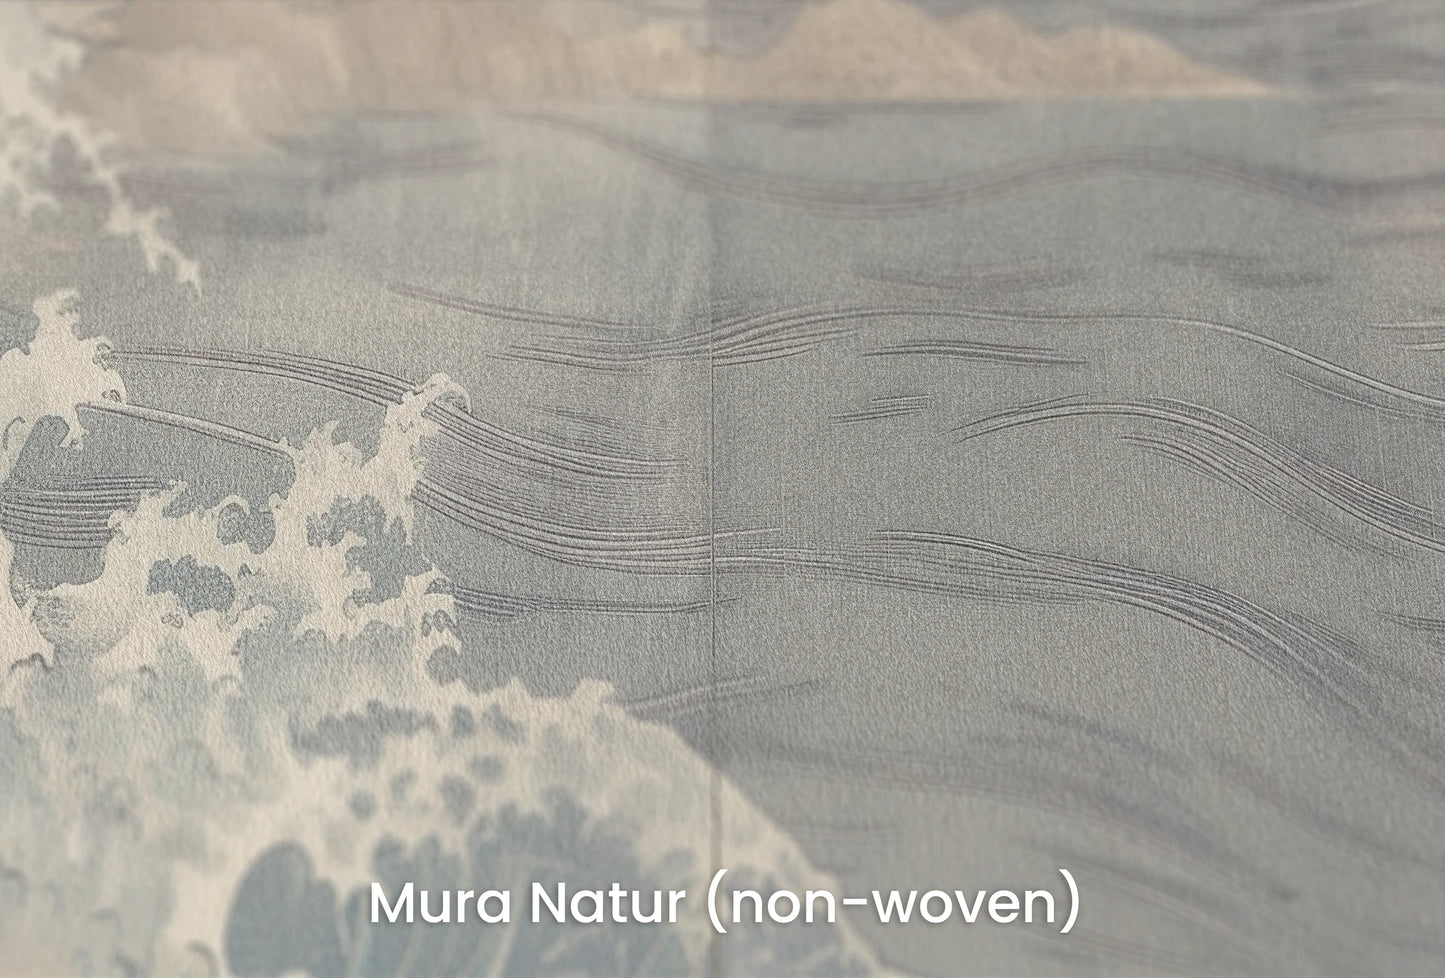 Zbliżenie na artystyczną fototapetę o nazwie Pine Wave Echo na podłożu Mura Natur (non-woven) - naturalne i ekologiczne podłoże.